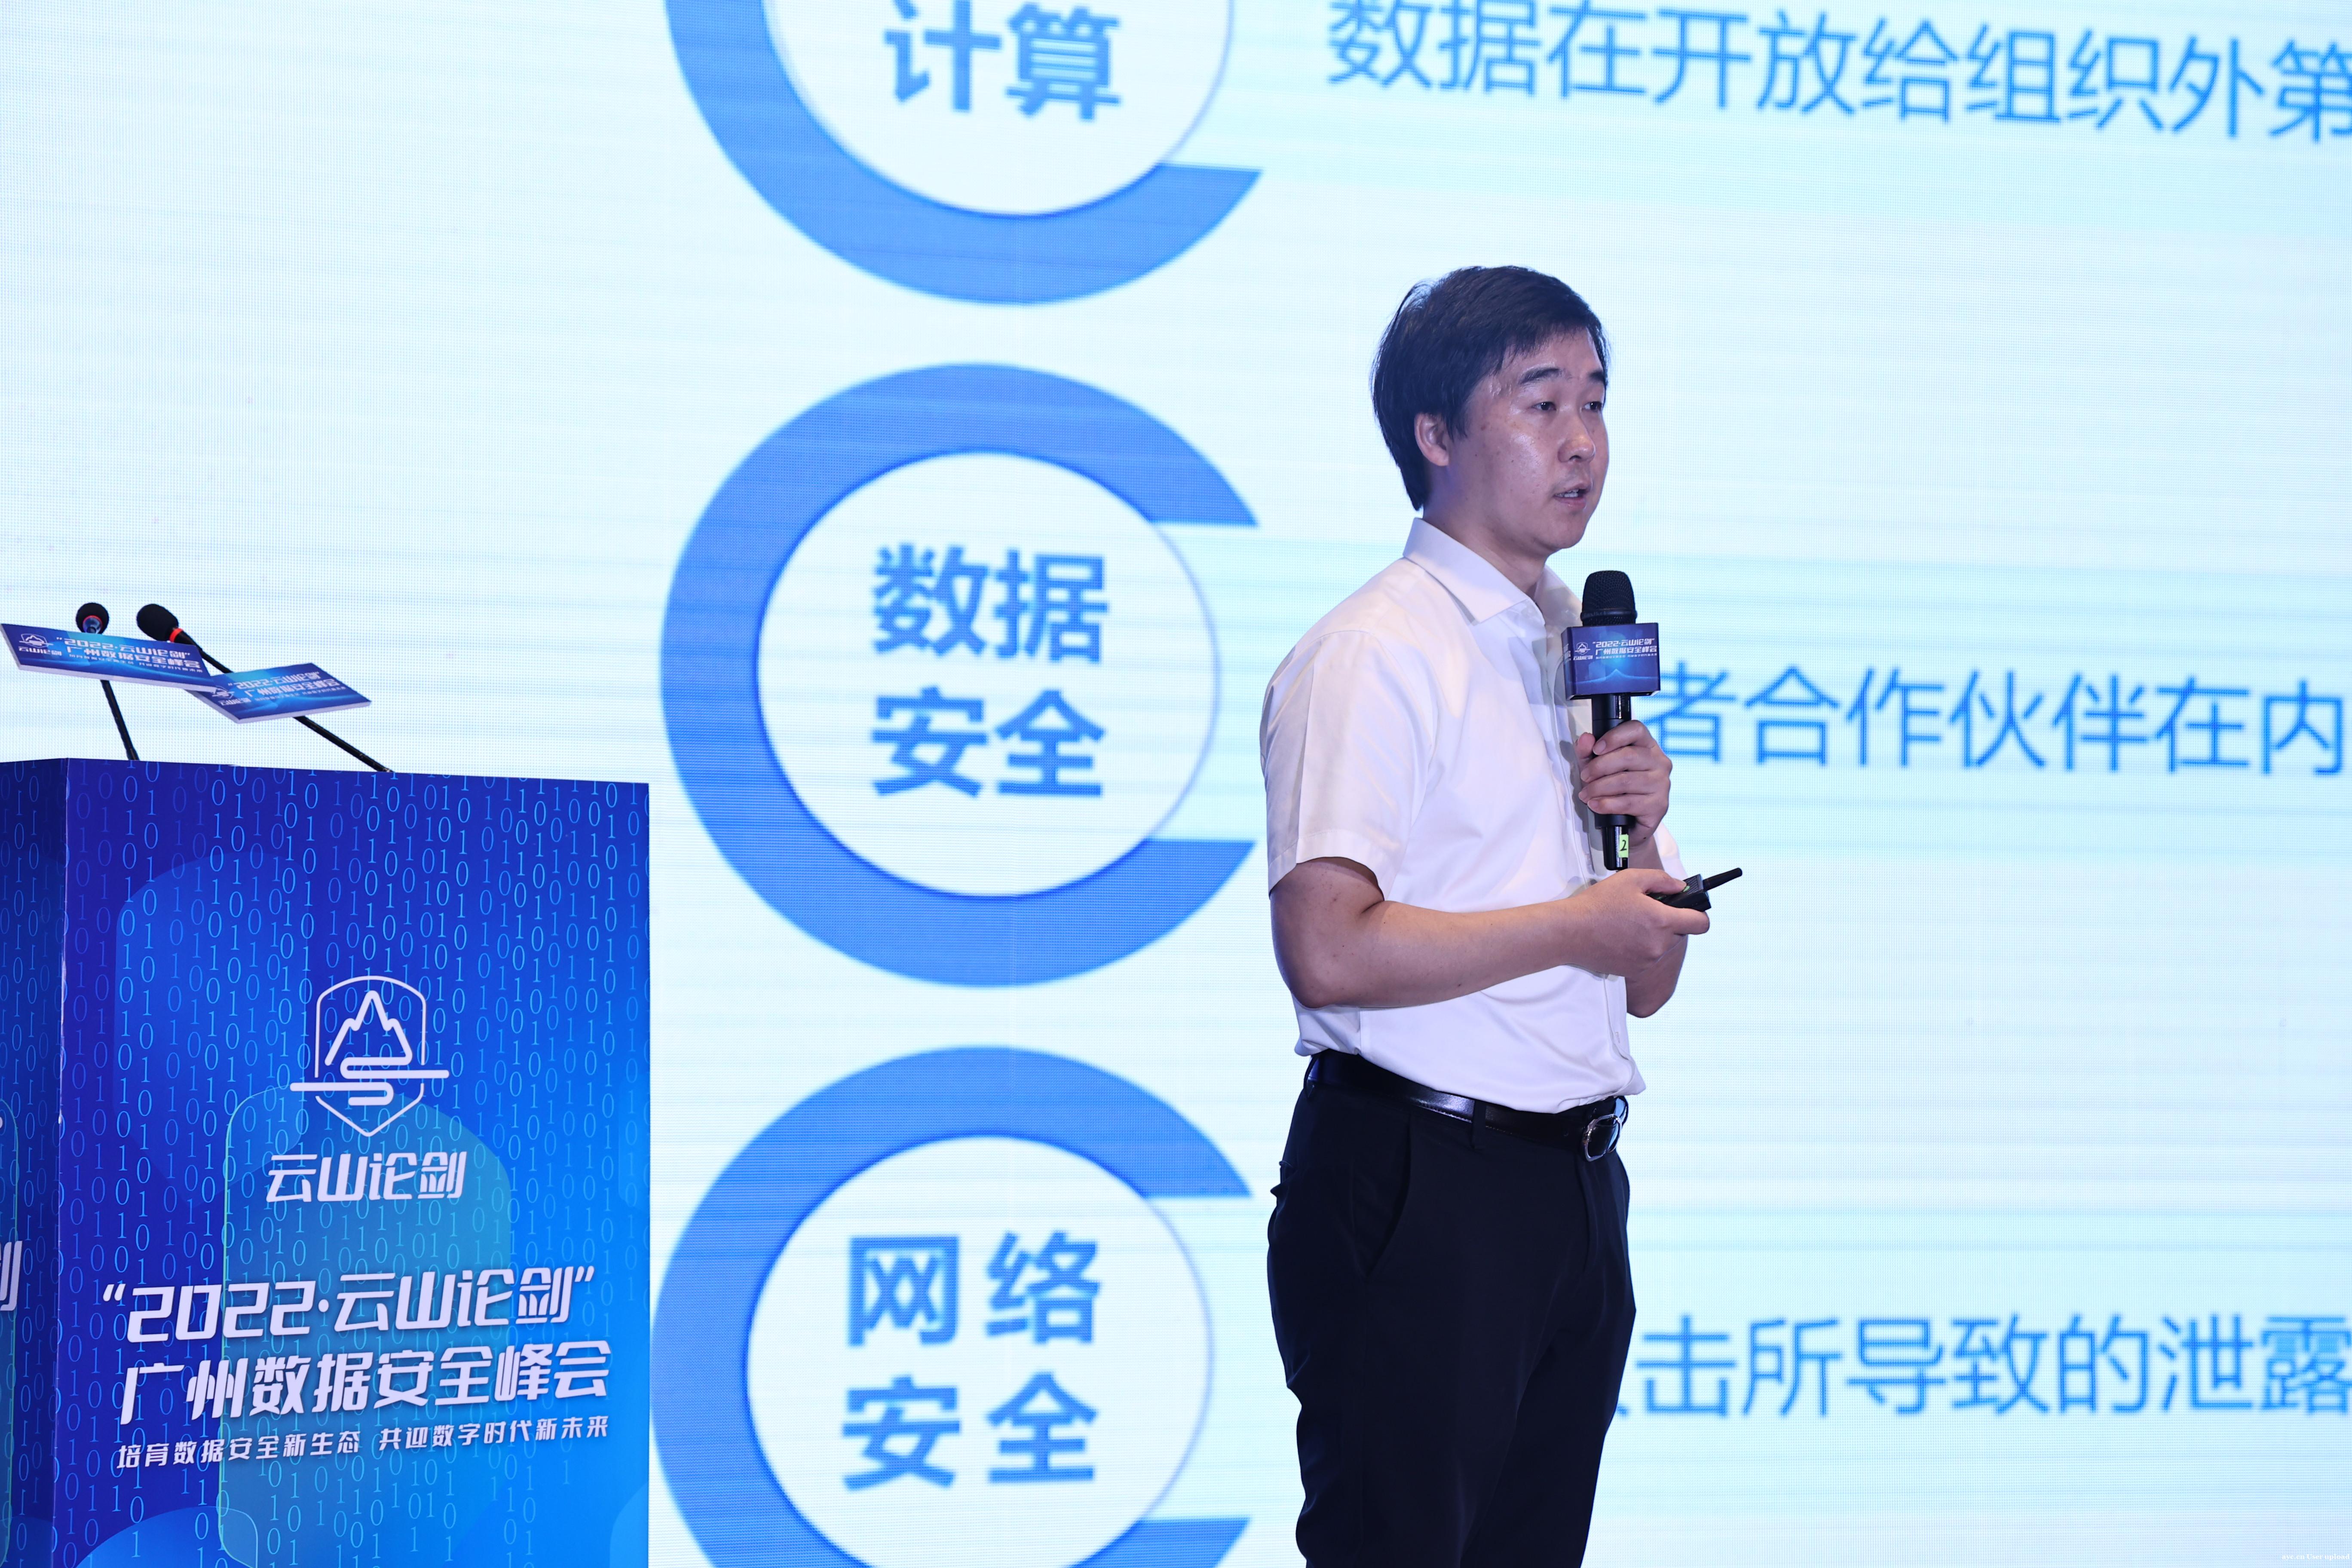 广州举办首个数据安全峰会